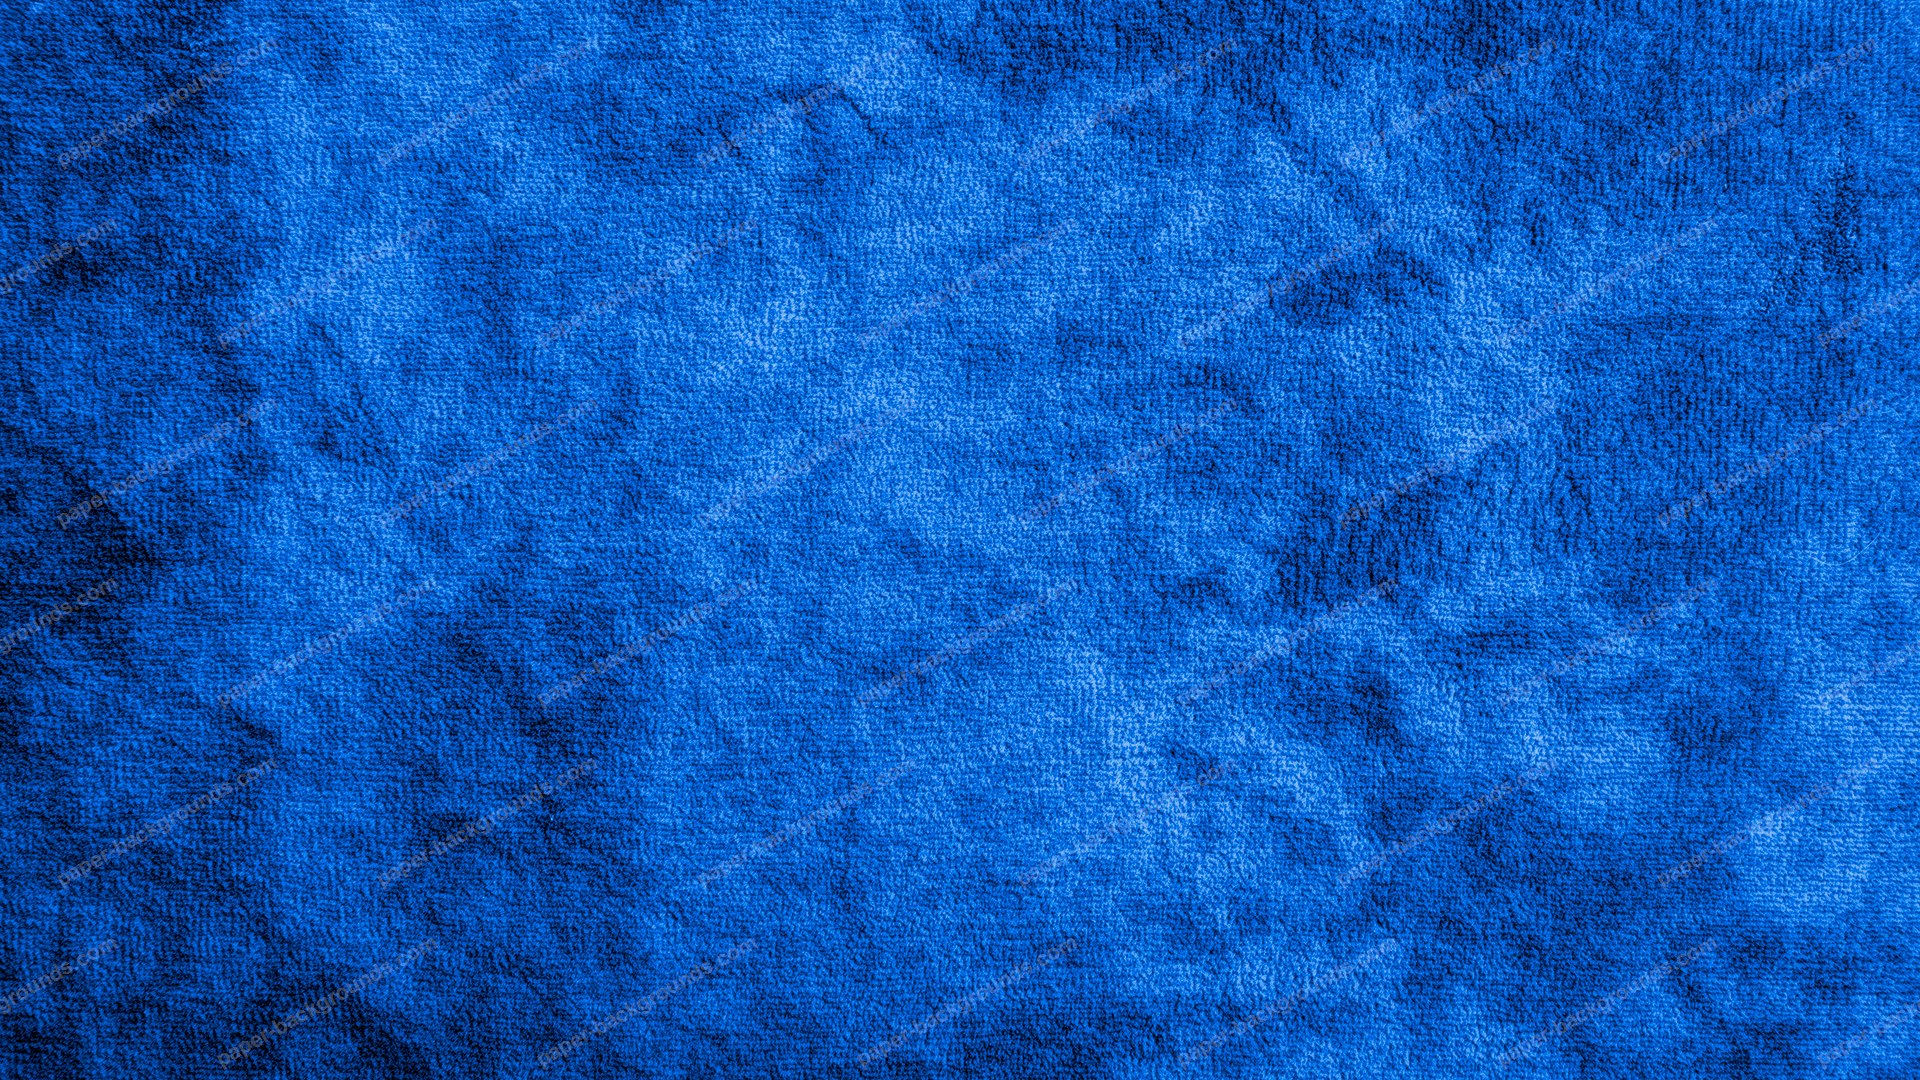 carta da parati strutturata blu,blu cobalto,blu,blu elettrico,turchese,acqua